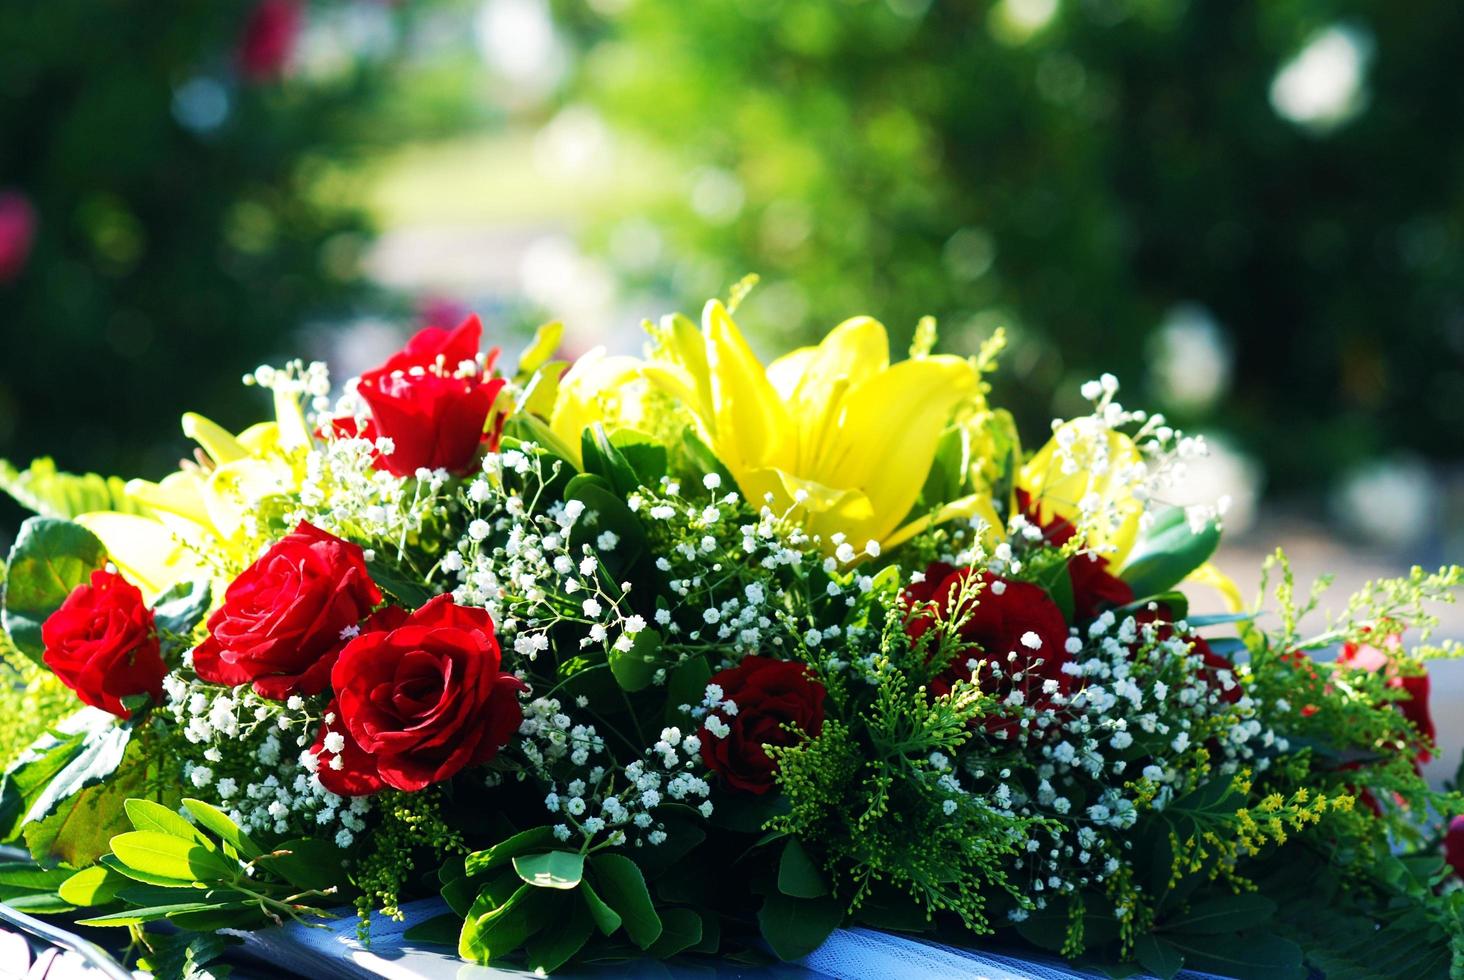 flores de boda romanticas y emocionales foto